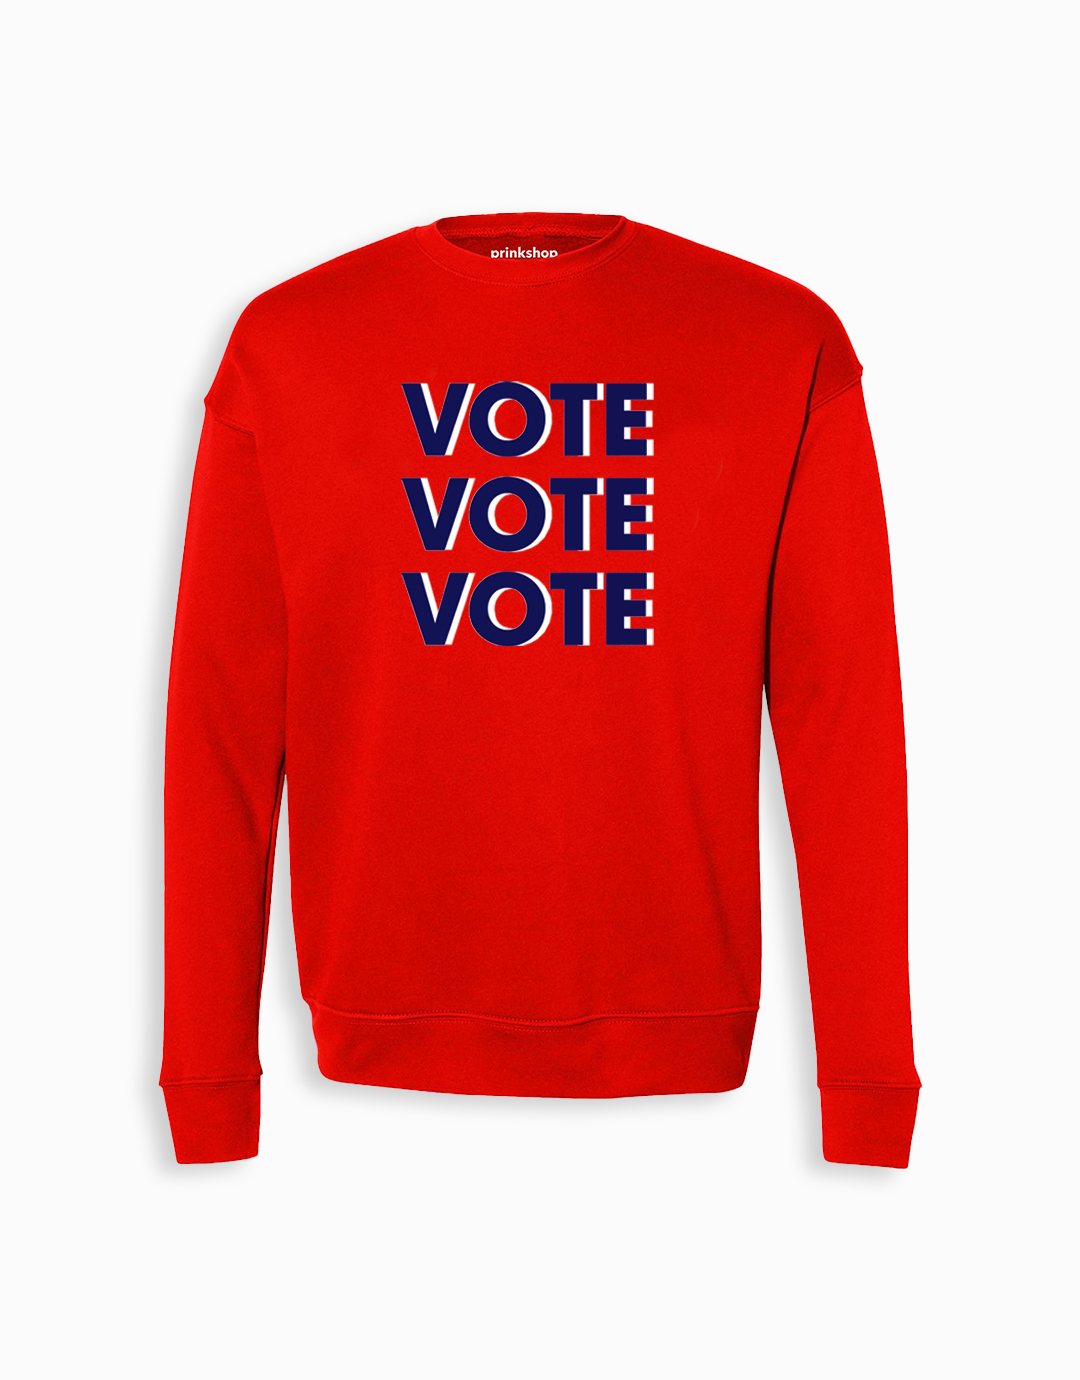 The Vote Vote Vote Sweatshirt